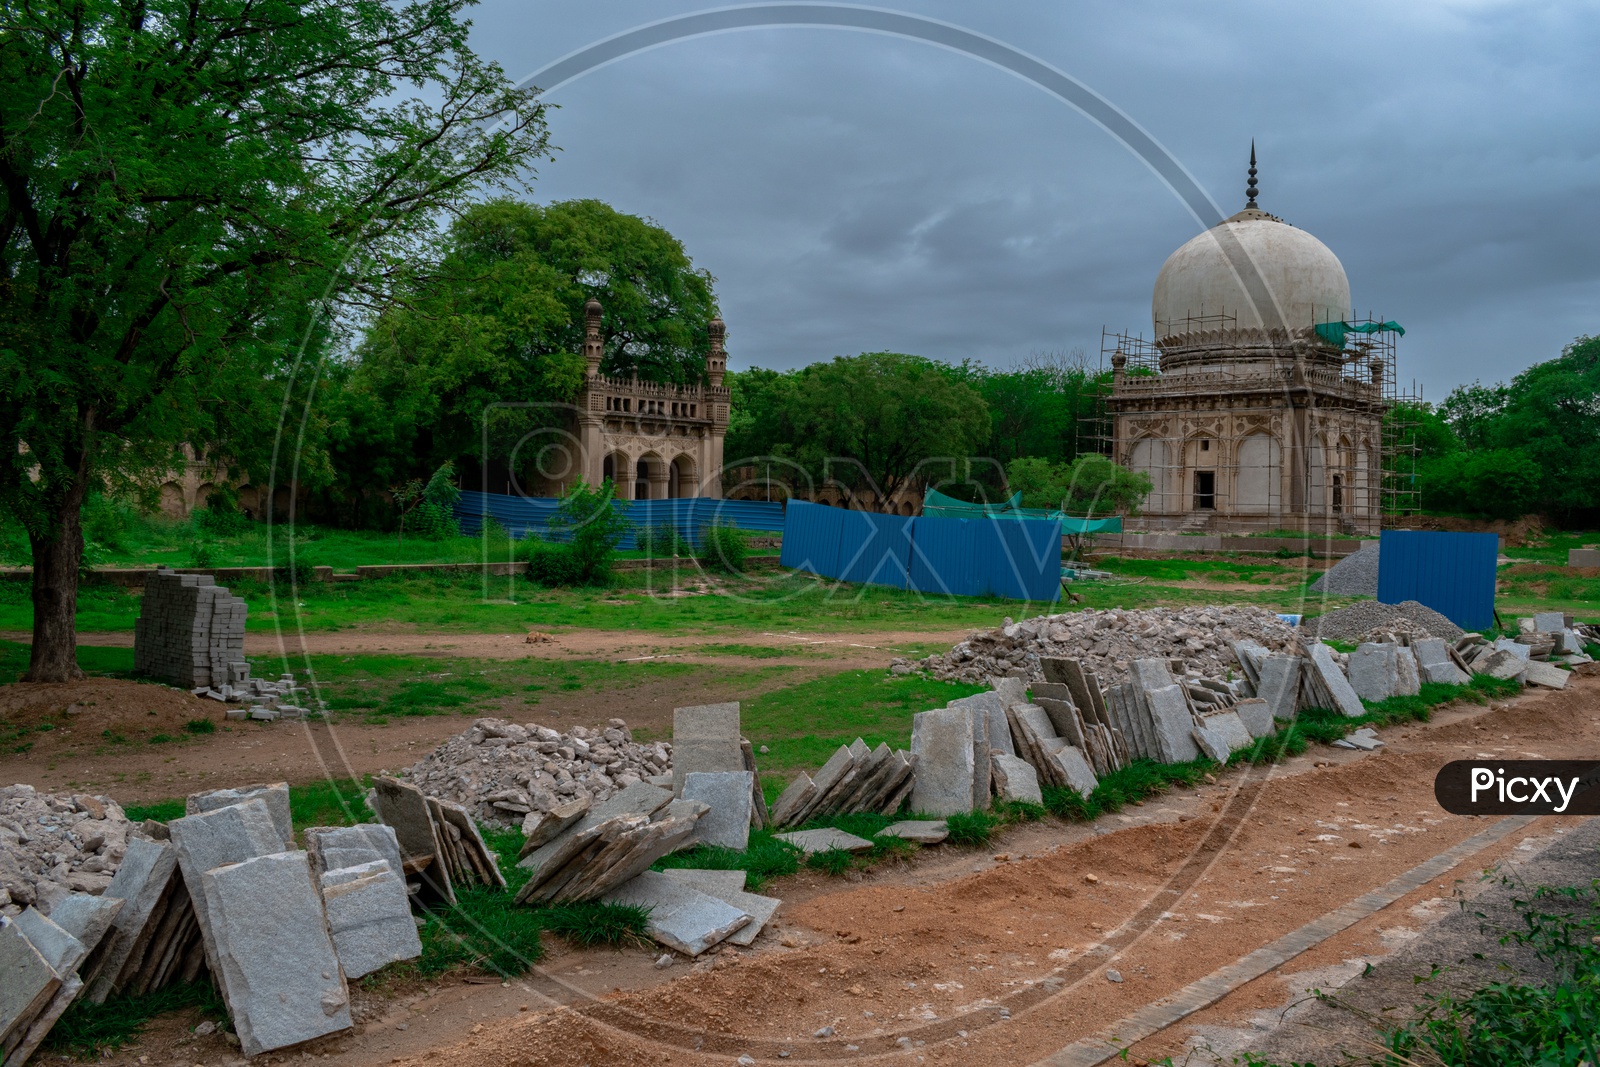 Renovation works at Qutub Shahi Tombs, Hyderabad, Telangana.